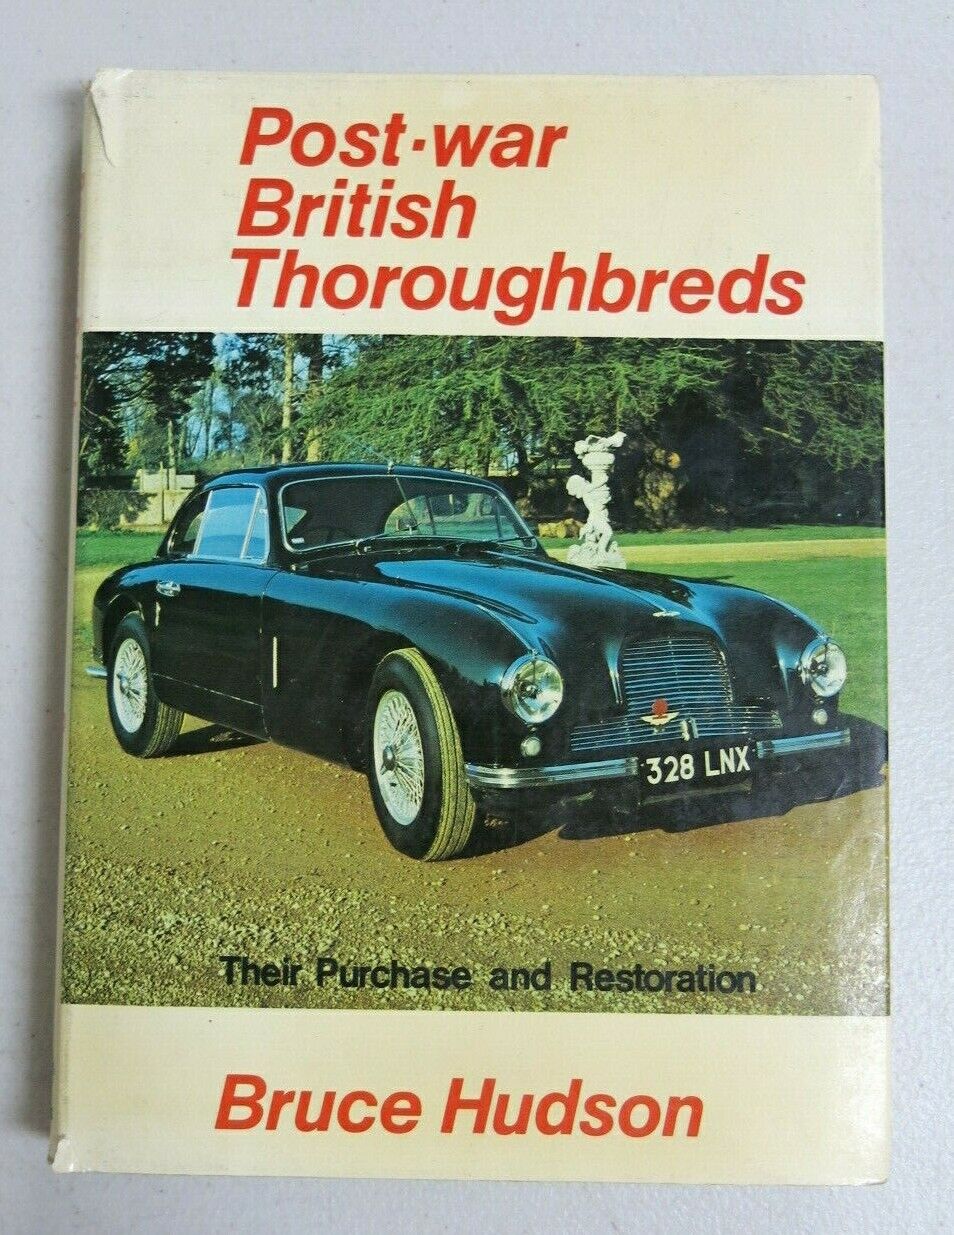 Post-war British Thoroughbreds by Bill Gunston (1852605979)